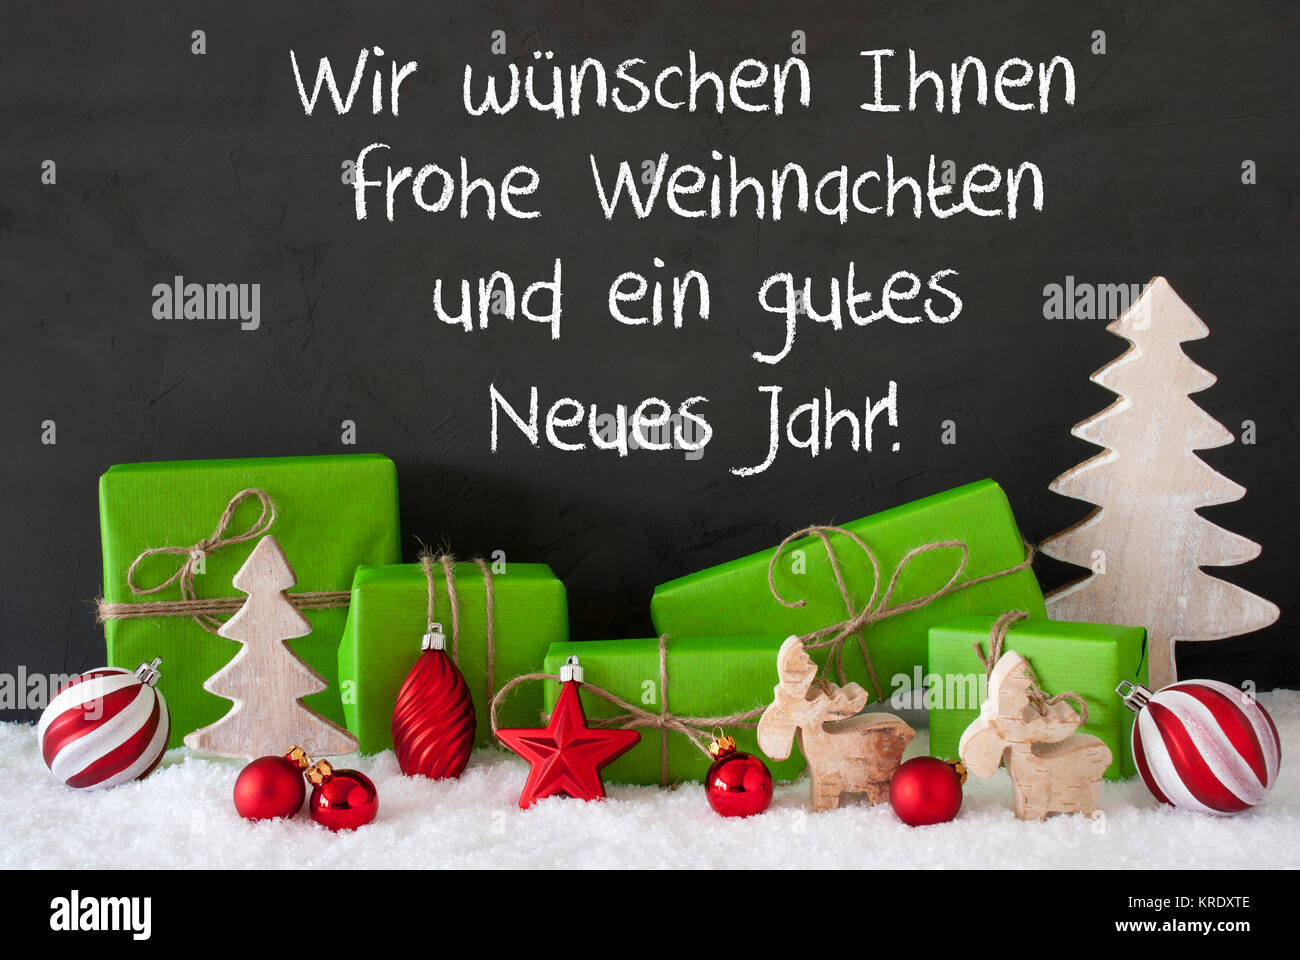 Deutsche Text Wir wuenschen Ihnen Frohe Weihnachten und ein Gutes neues  Jahr, frohe Weihnachten und ein glückliches Neues Jahr. Geschenke  Dekoration wie Baum, Elche oder roten Ball. Schwarz Zement Hintergrund mit  Schnee